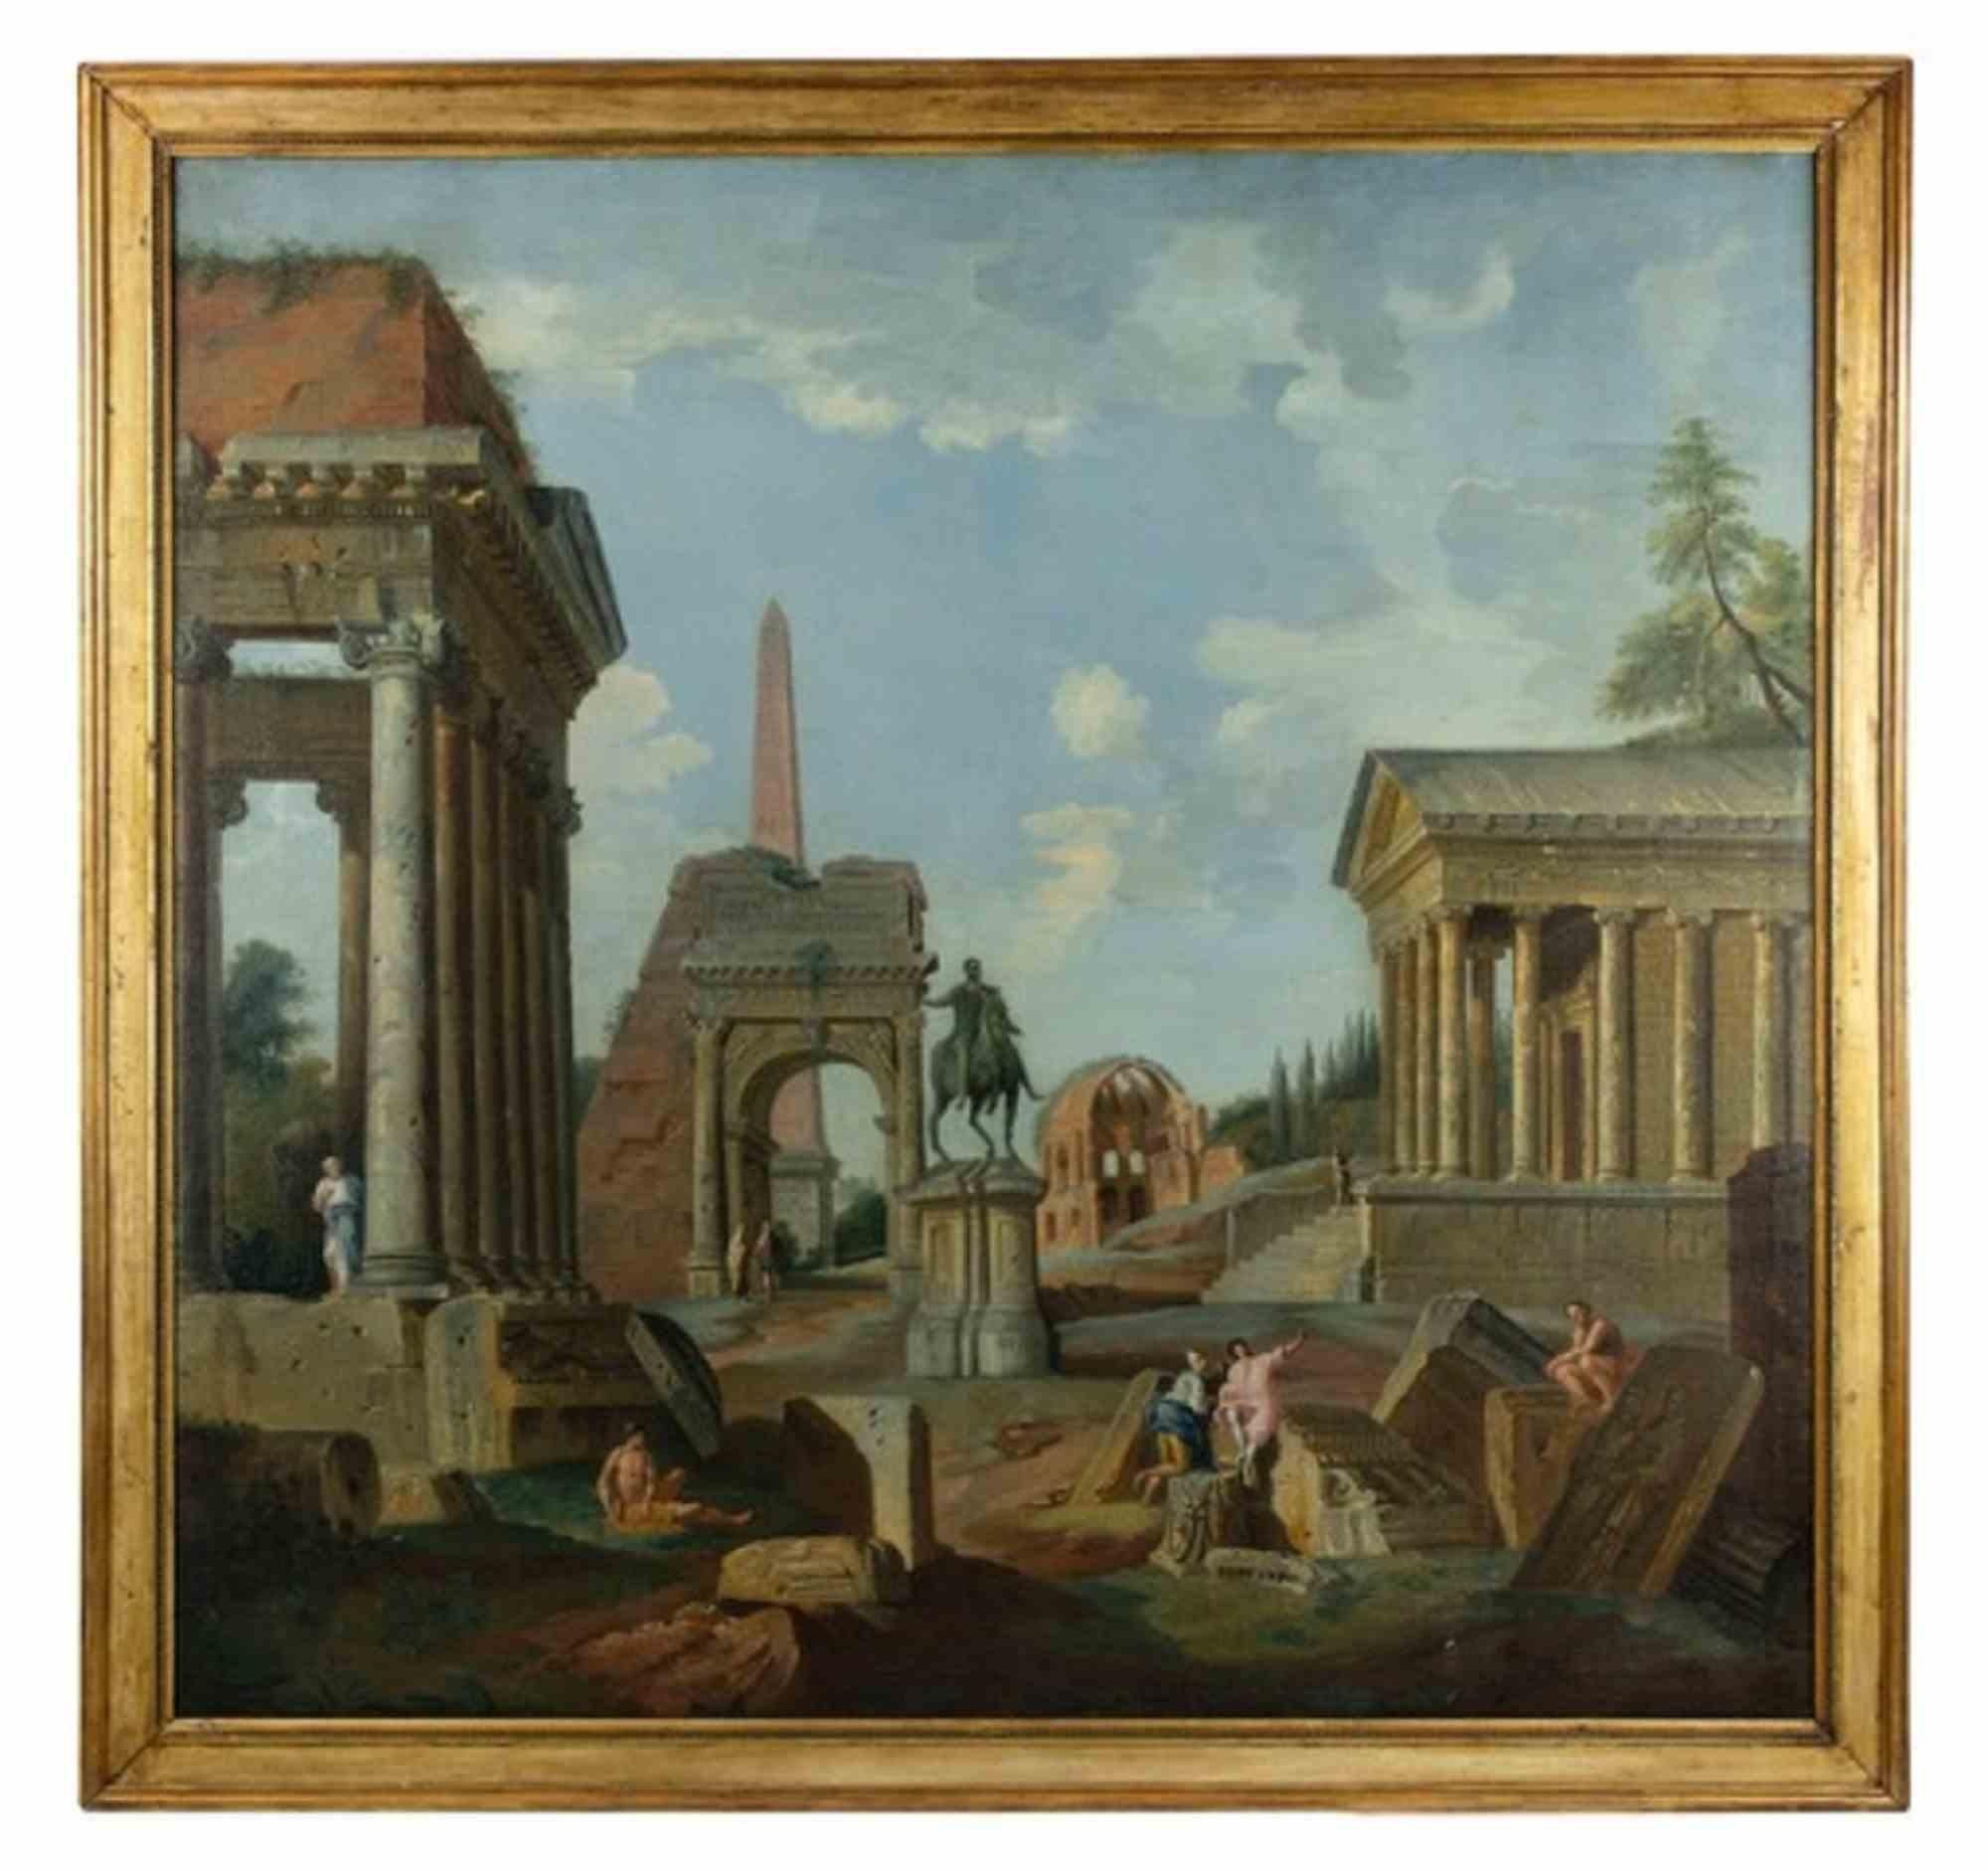 Römische Ruinen ist ein originales altmeisterliches Kunstwerk, das von einem Anhänger des Künstlers Giovanni Paolo Panini realisiert und Francis Harding (1730-1766) zugeschrieben wird.

Gemischtes farbiges Öl auf Leinwand.

Einschließlich